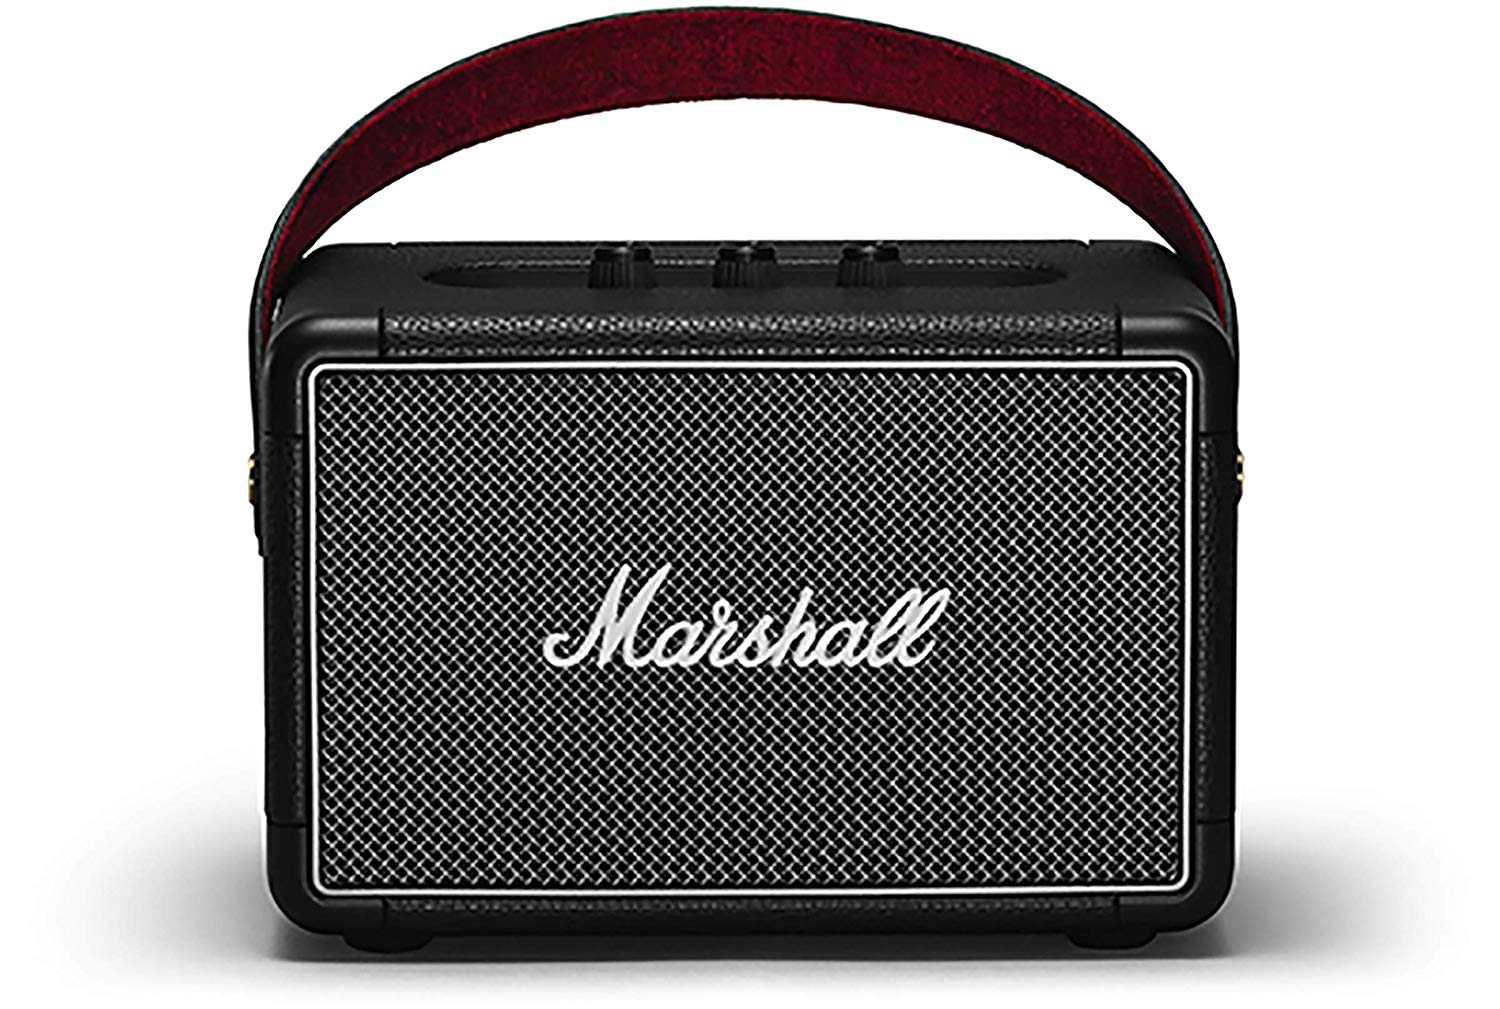 Marshall Kilburn II Wireless Stereo Speaker - Black